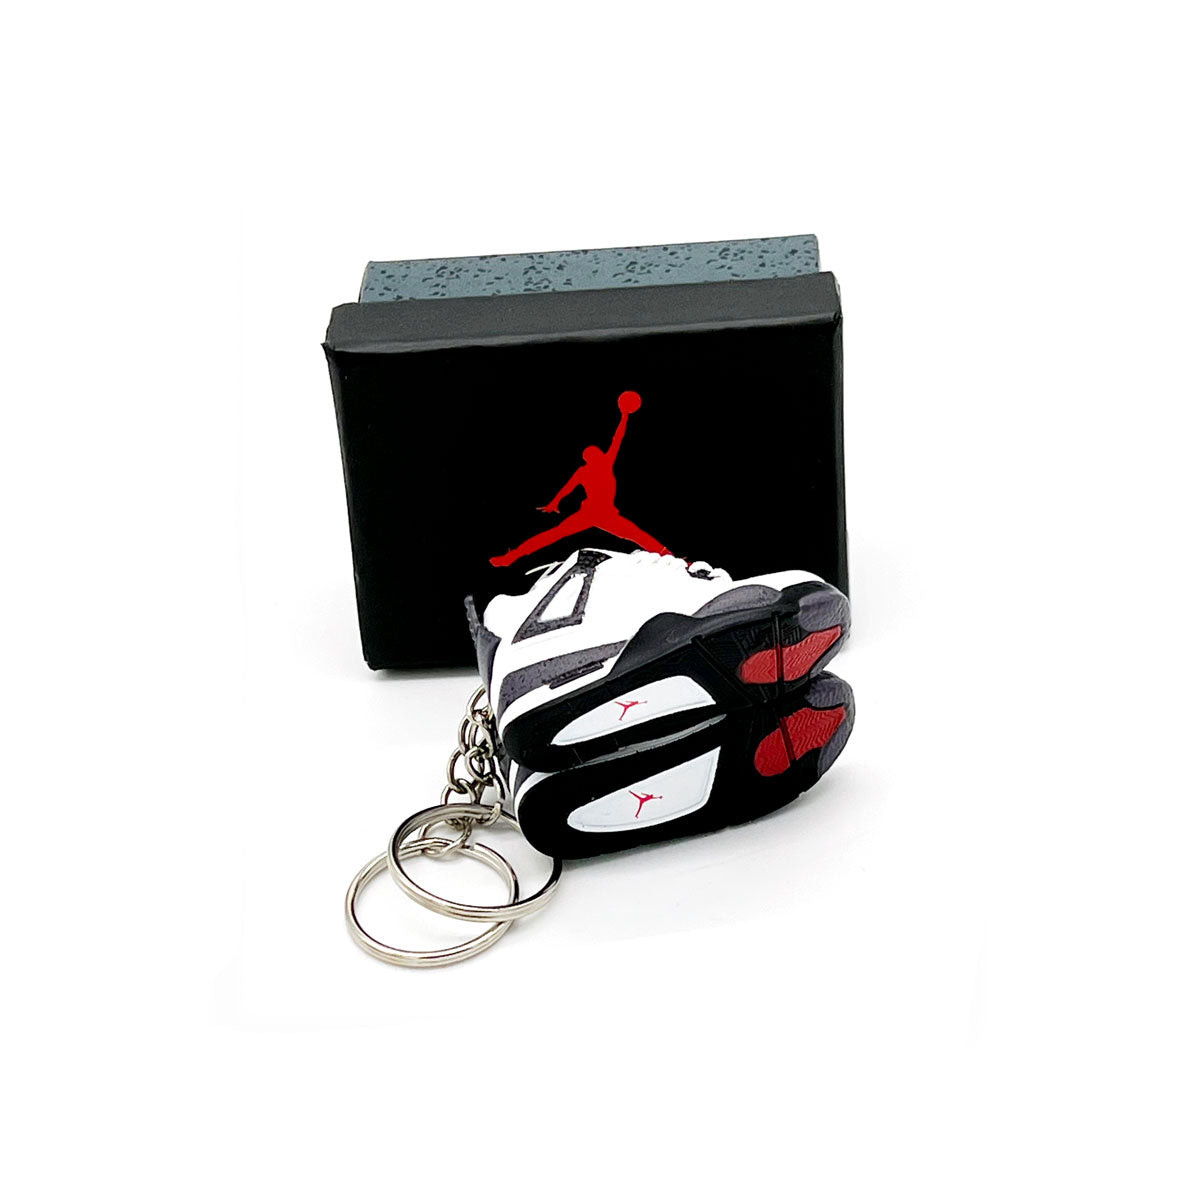 Jordan 1 “LV” – Keychain Kicks